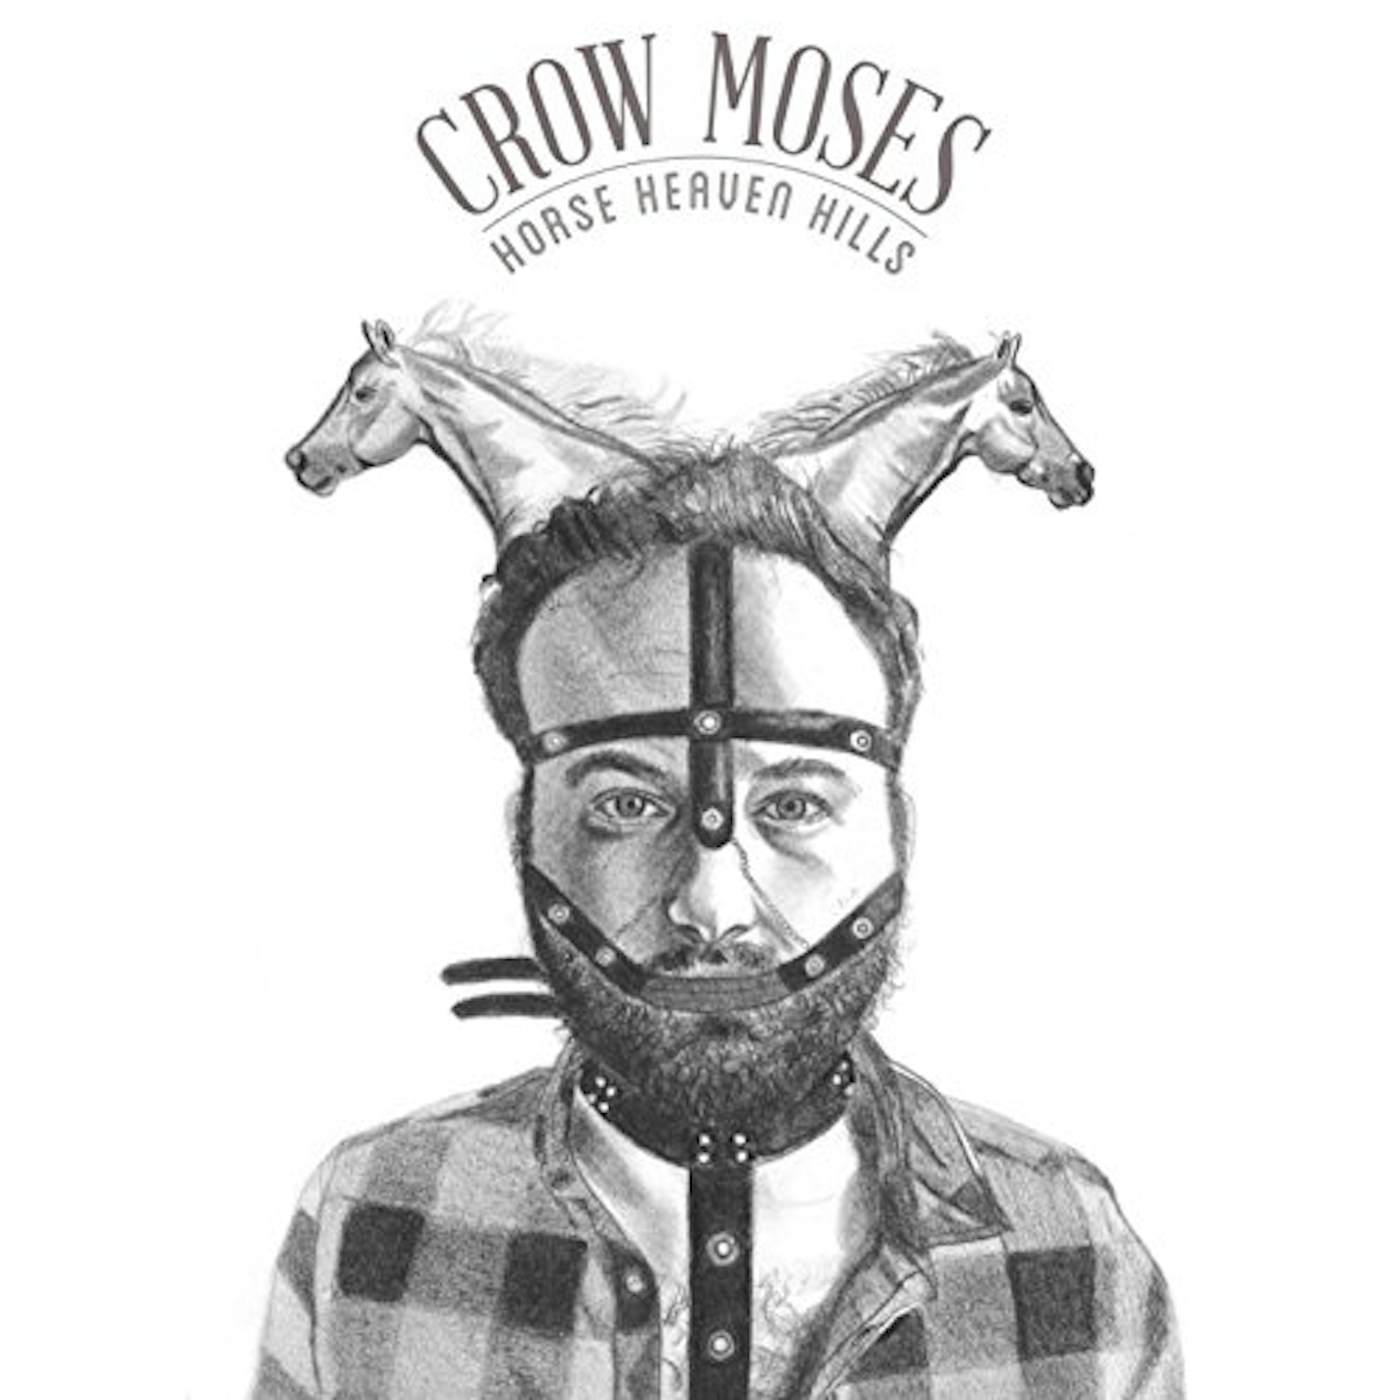 Crow Moses HORSE HEAVEN HILLS CD